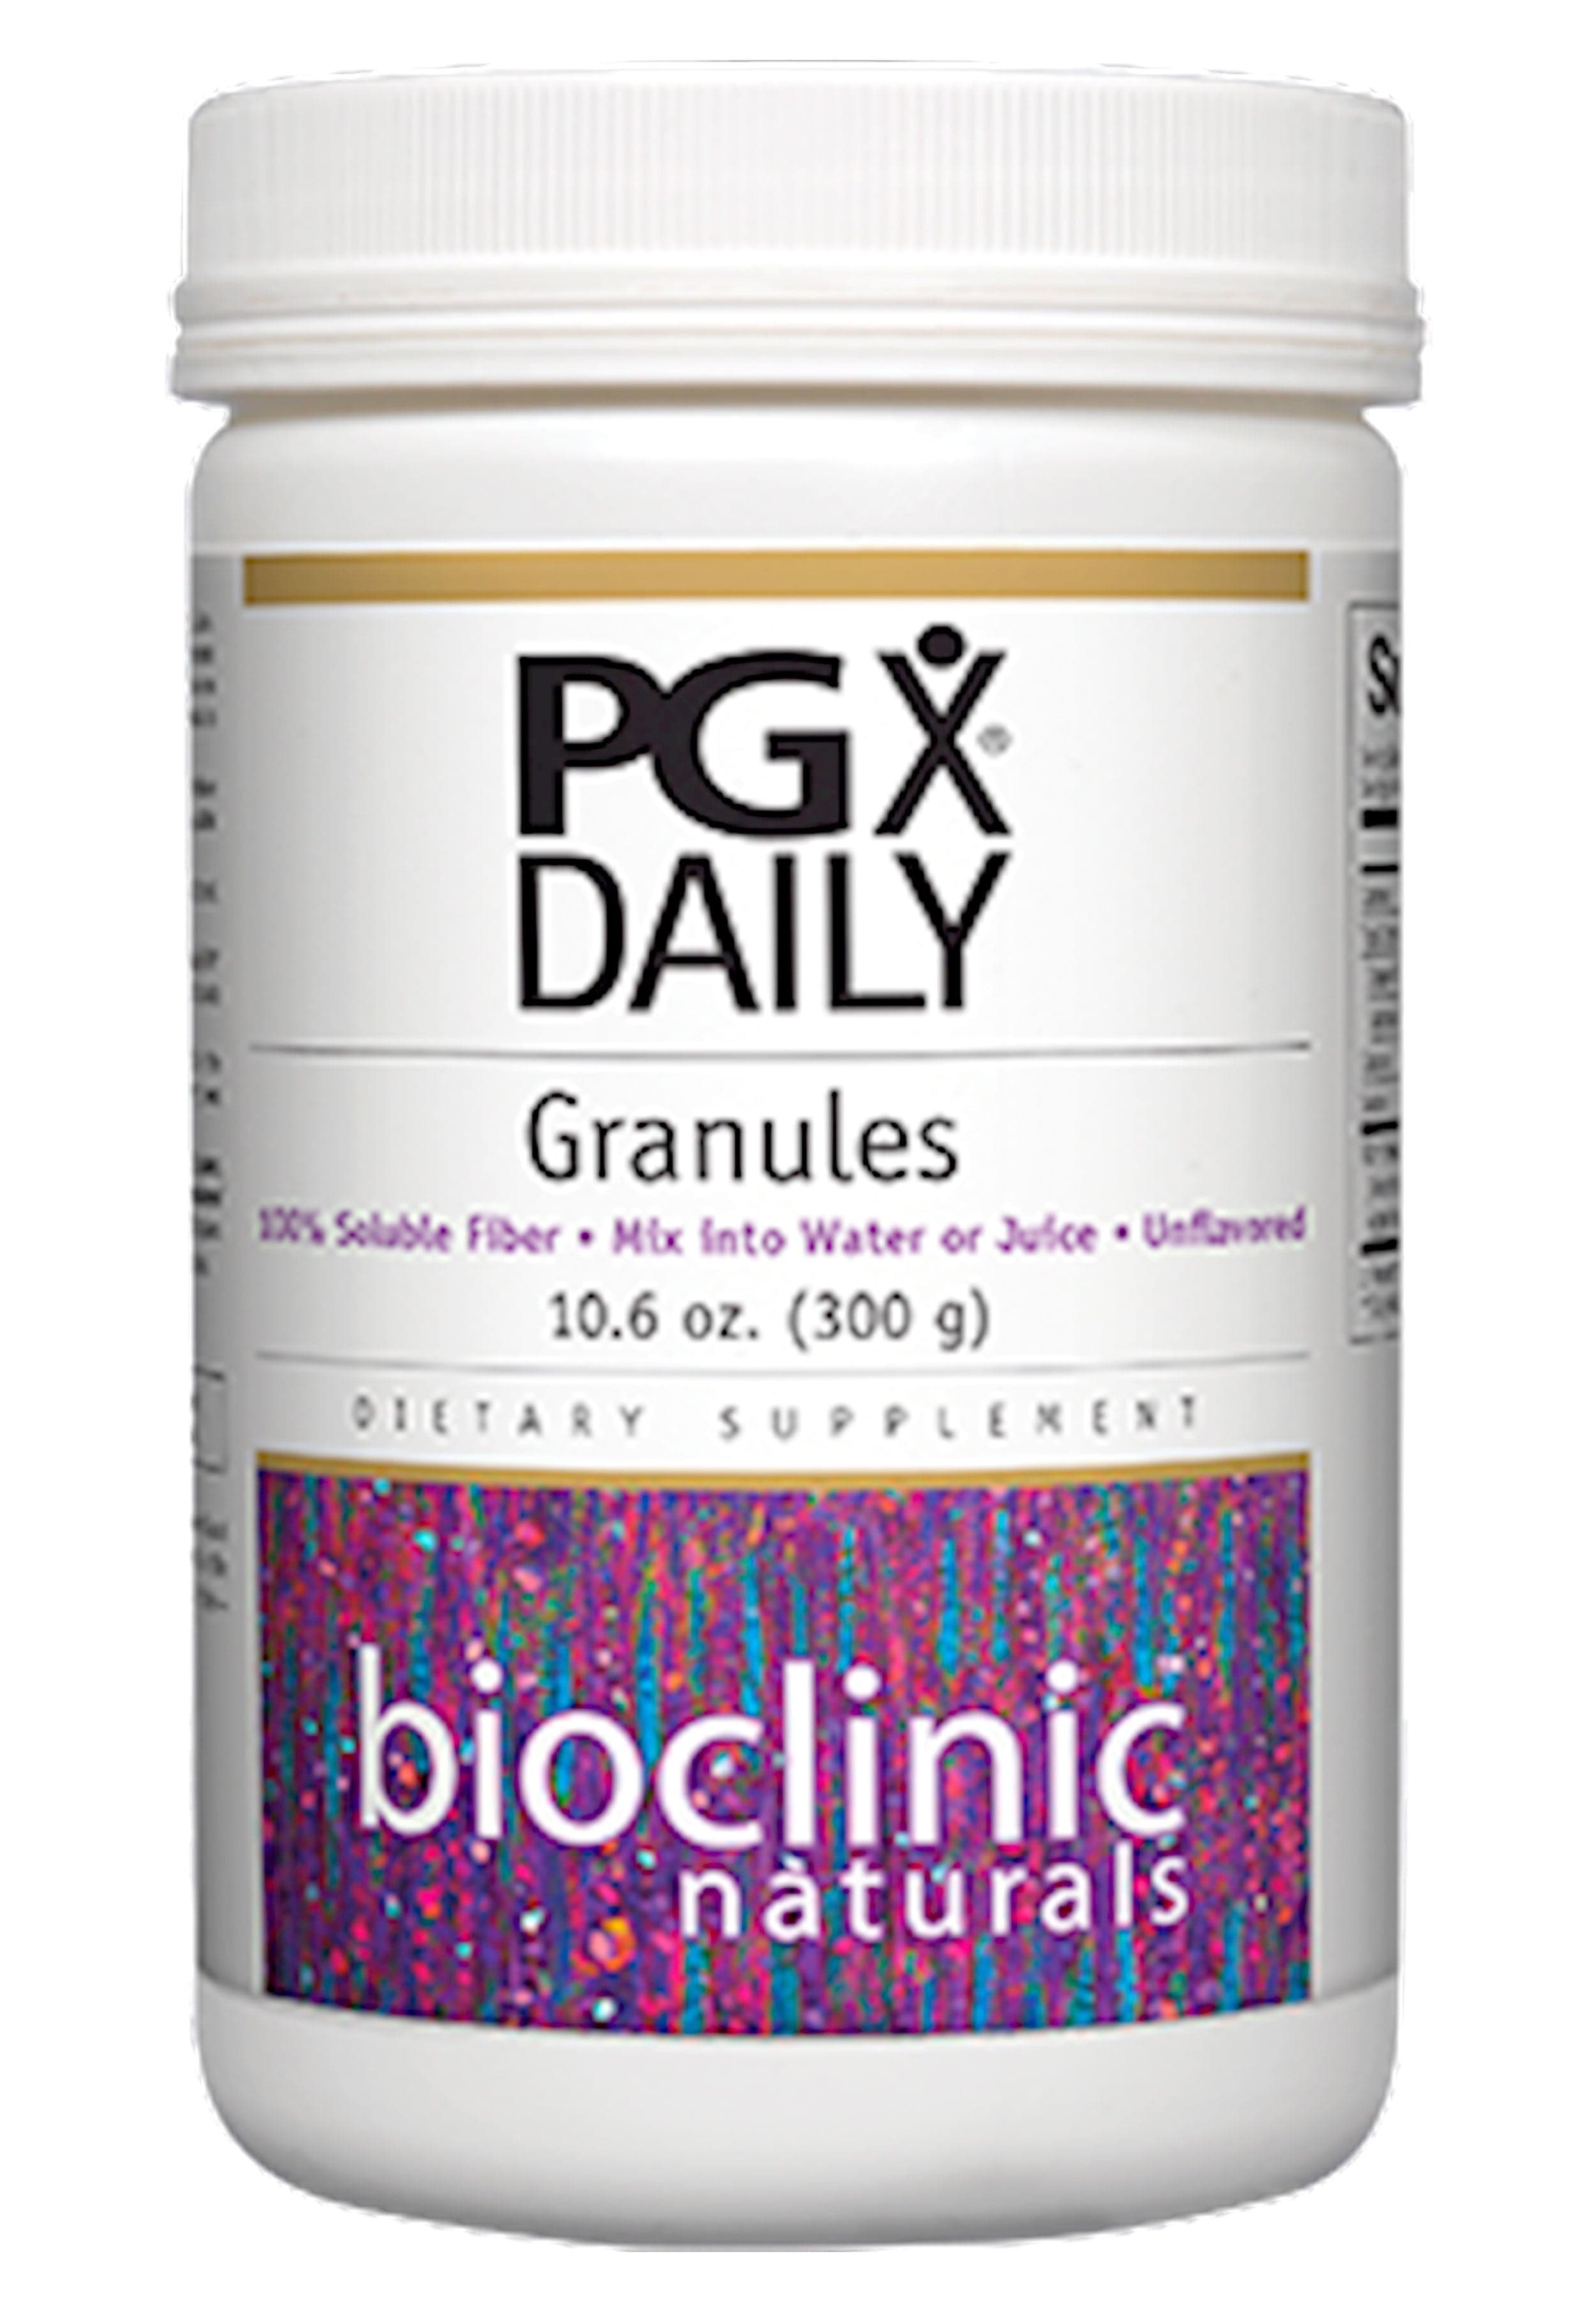 Bioclinic Naturals PGX Daily Granules 